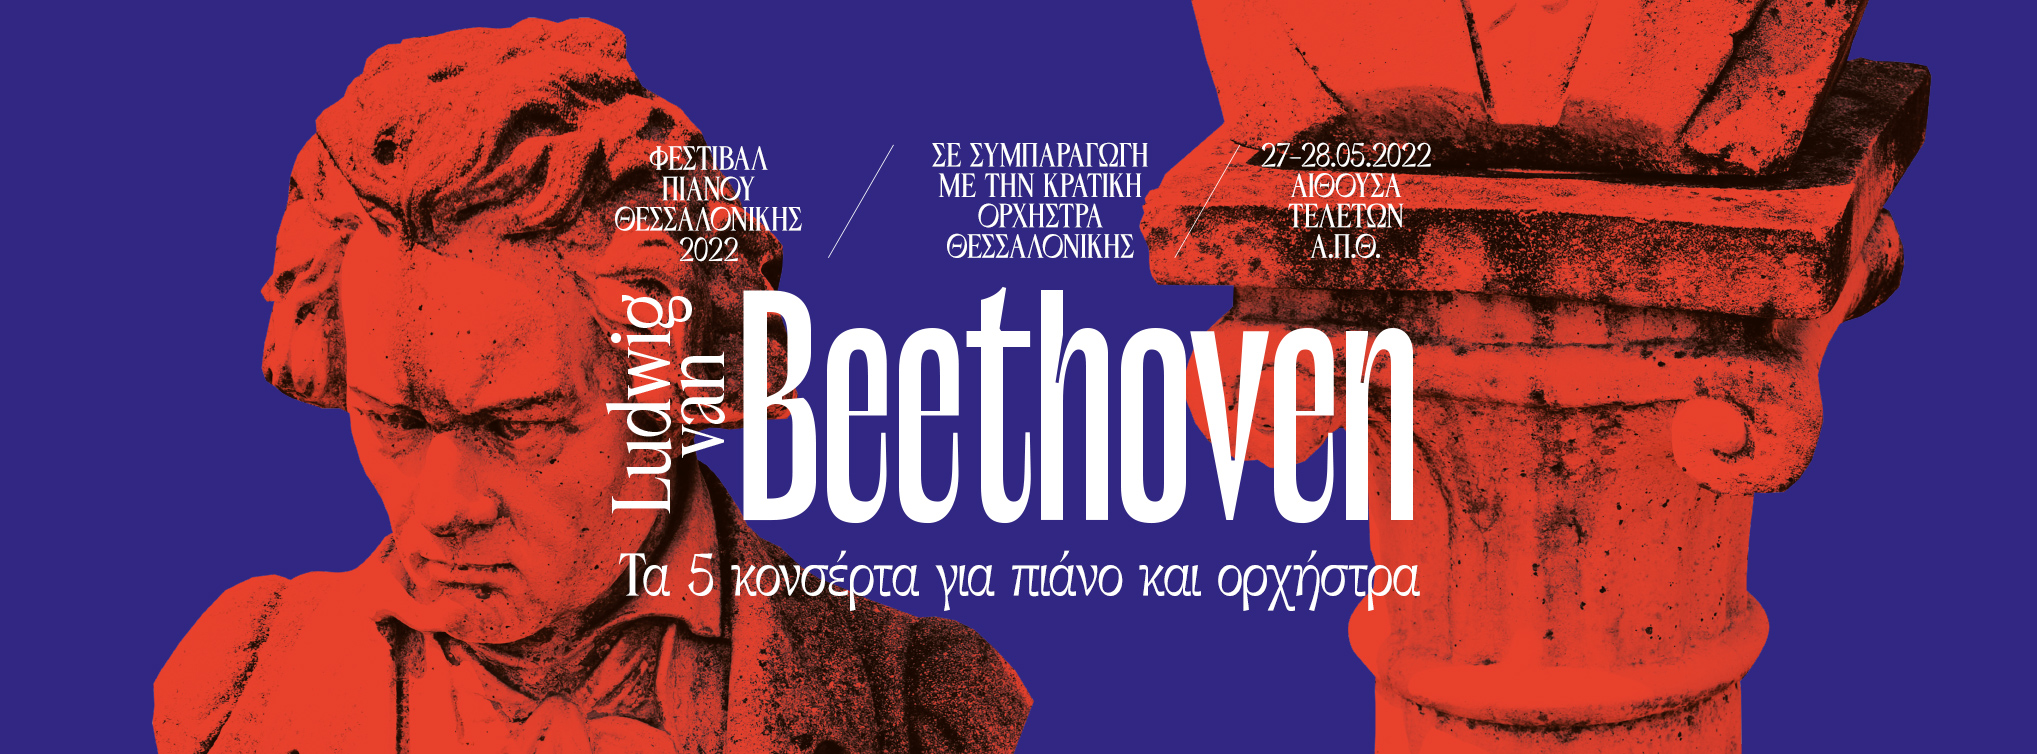 Φεστιβάλ Πιάνου Θεσσαλονίκης και Κρατική Ορχήστρα παρουσιάζουν στις 27 & 28 Μαΐου τα πέντε κονσέρτα για πιάνο και ορχήστρα του Μπετόβεν